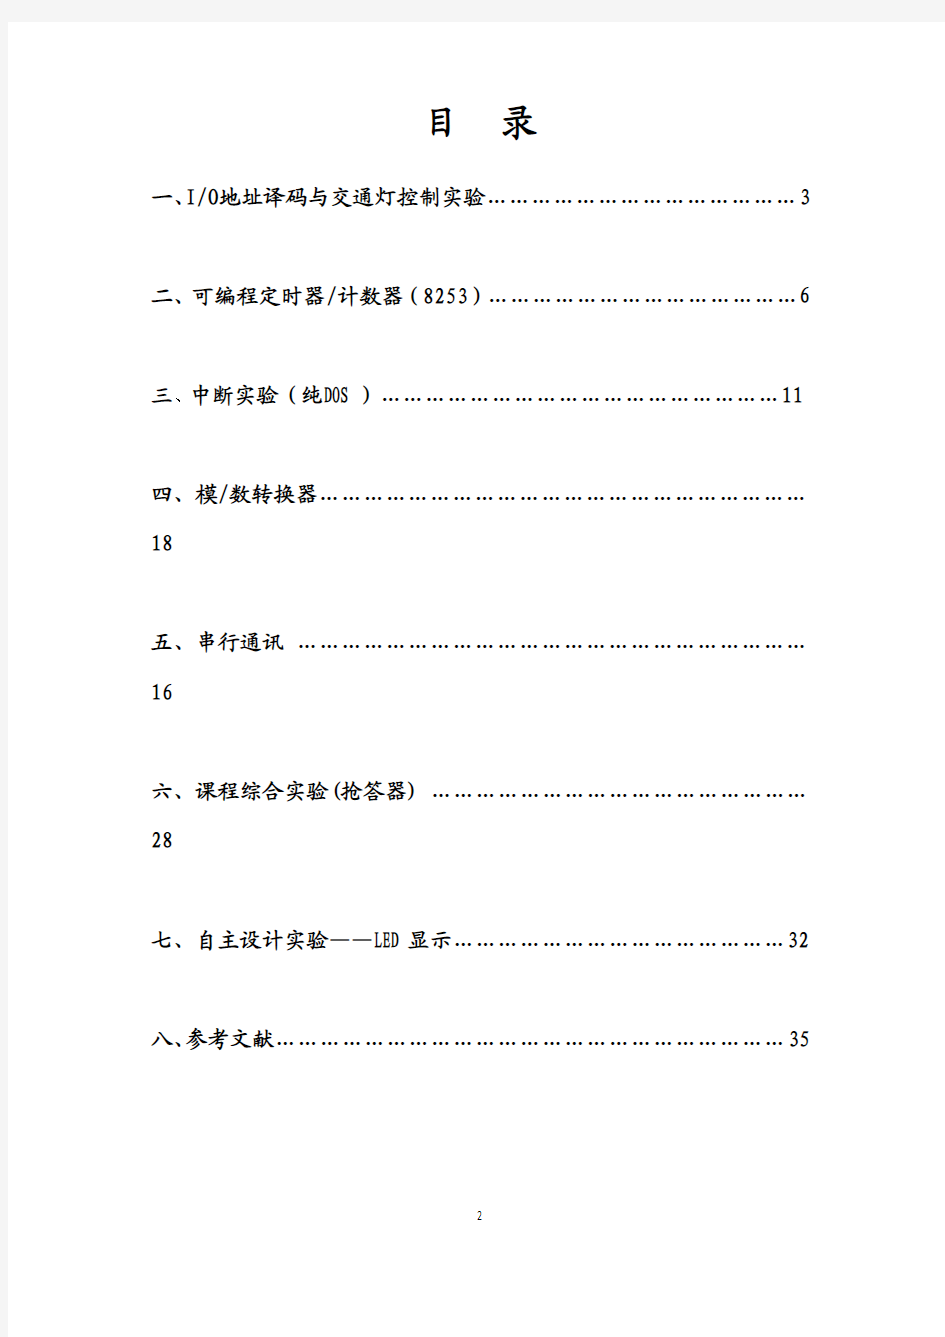 北京交通大学微机原理实验报告(yuan)